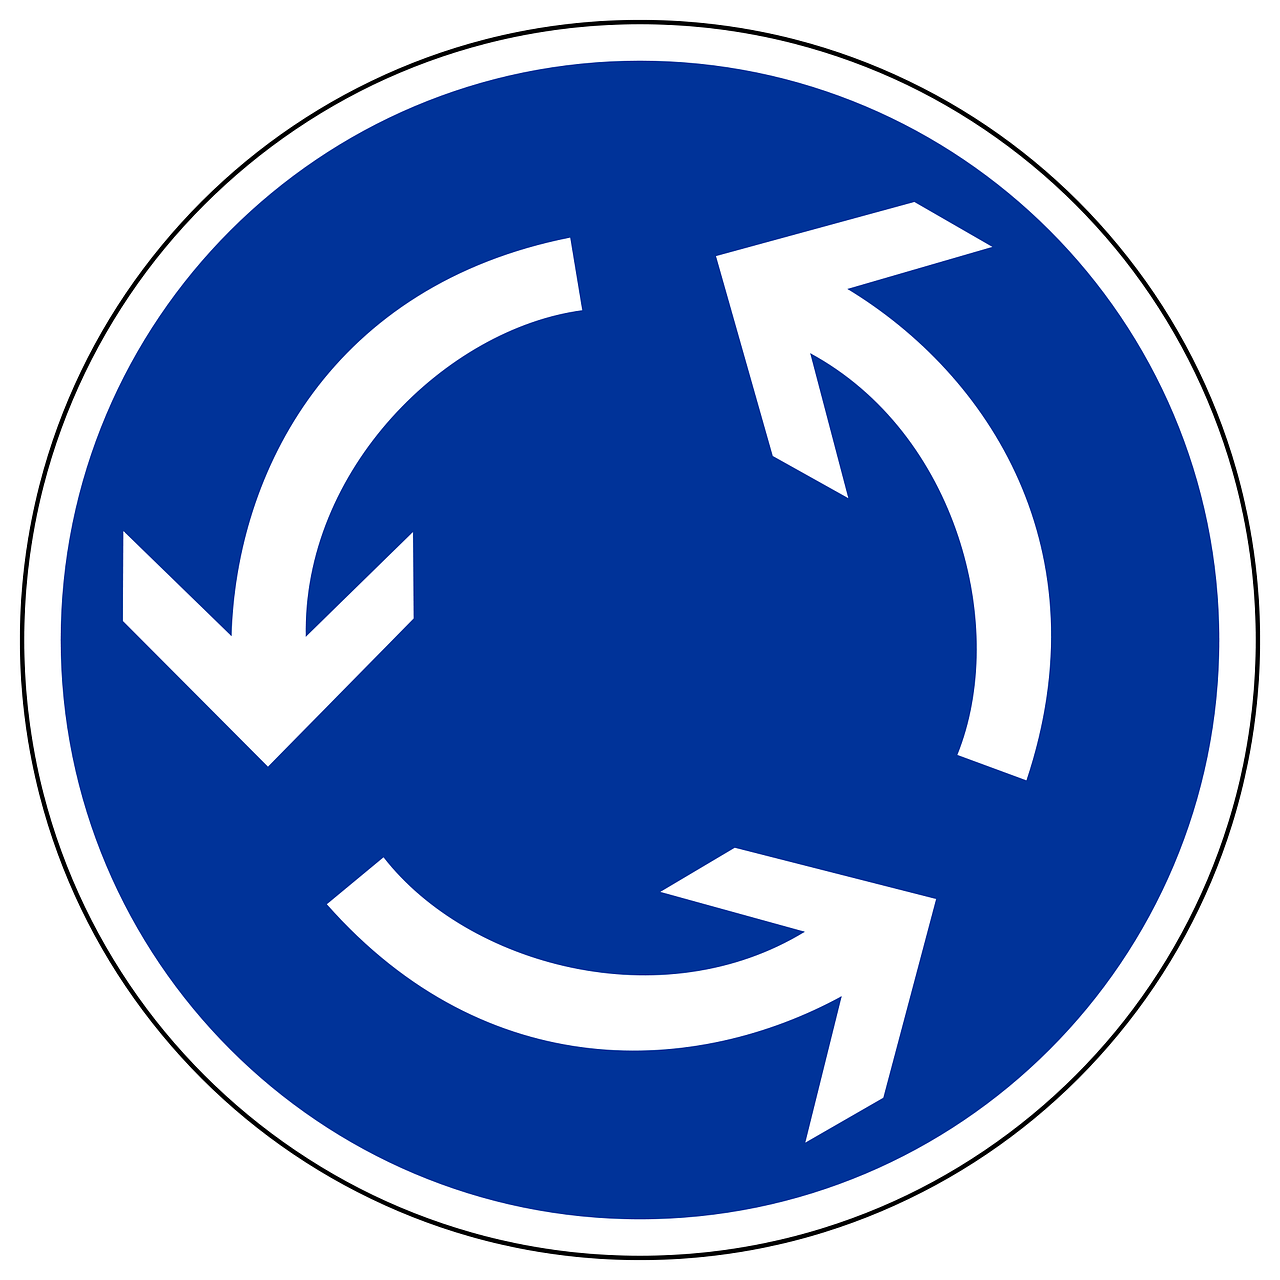 Blaues, rundes Verkehrsschild mit weißen Pfeilen nach links zeigend - Kreisverkehr